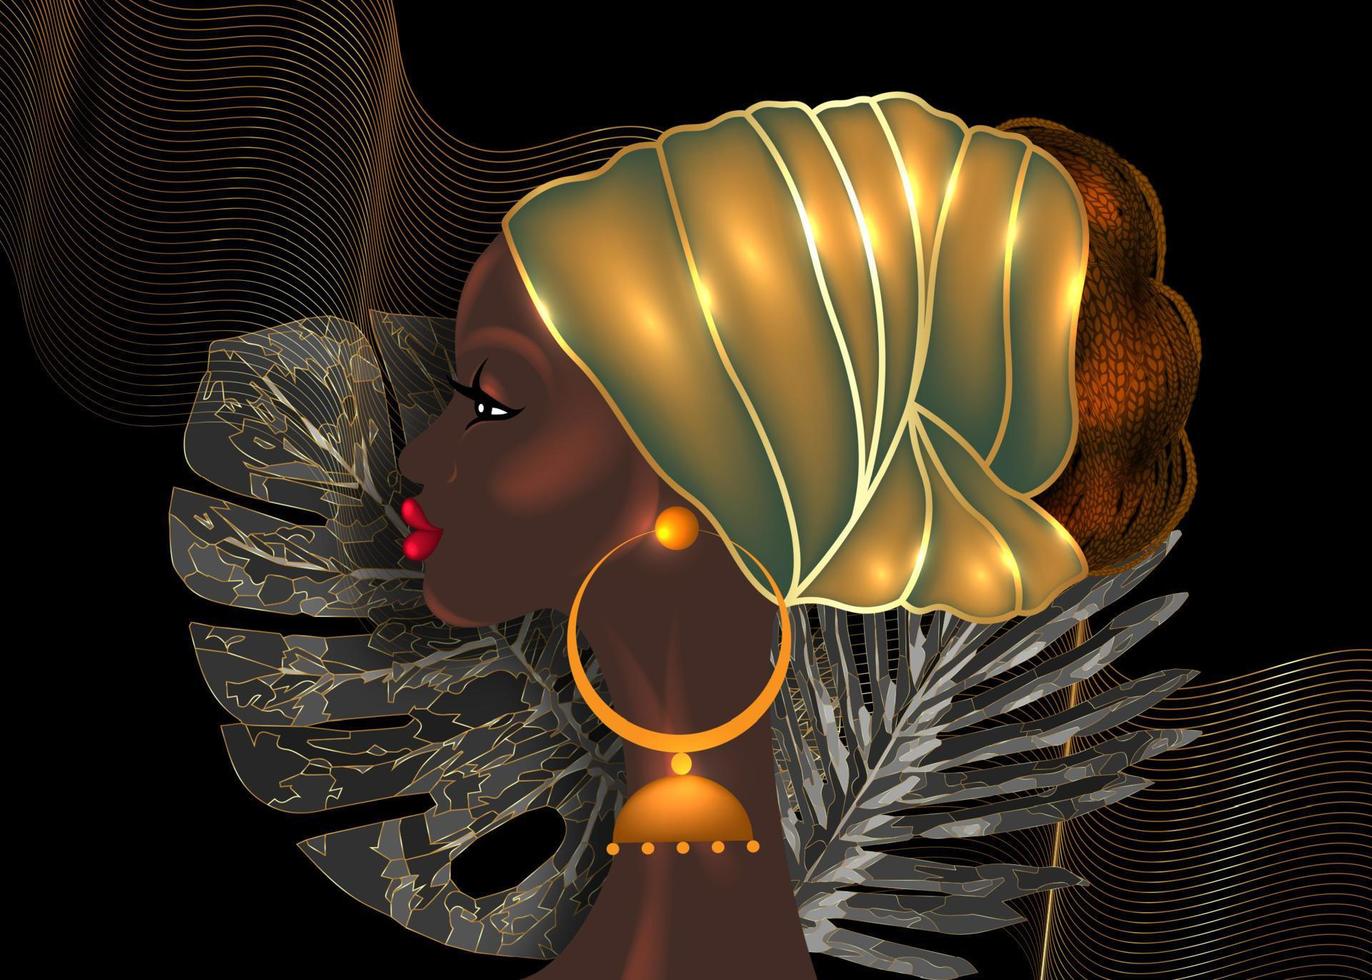 Afro-Frisur, schöne Porträt-Afrikanerin im Wachsdruck-Stoff-Gold-Turban, Diversity-Konzept. schwarze Königin, ethnische Kopfbedeckung für Afro-Zöpfe und verworrenes lockiges Haar. Vektor isolierter schwarzer Hintergrund